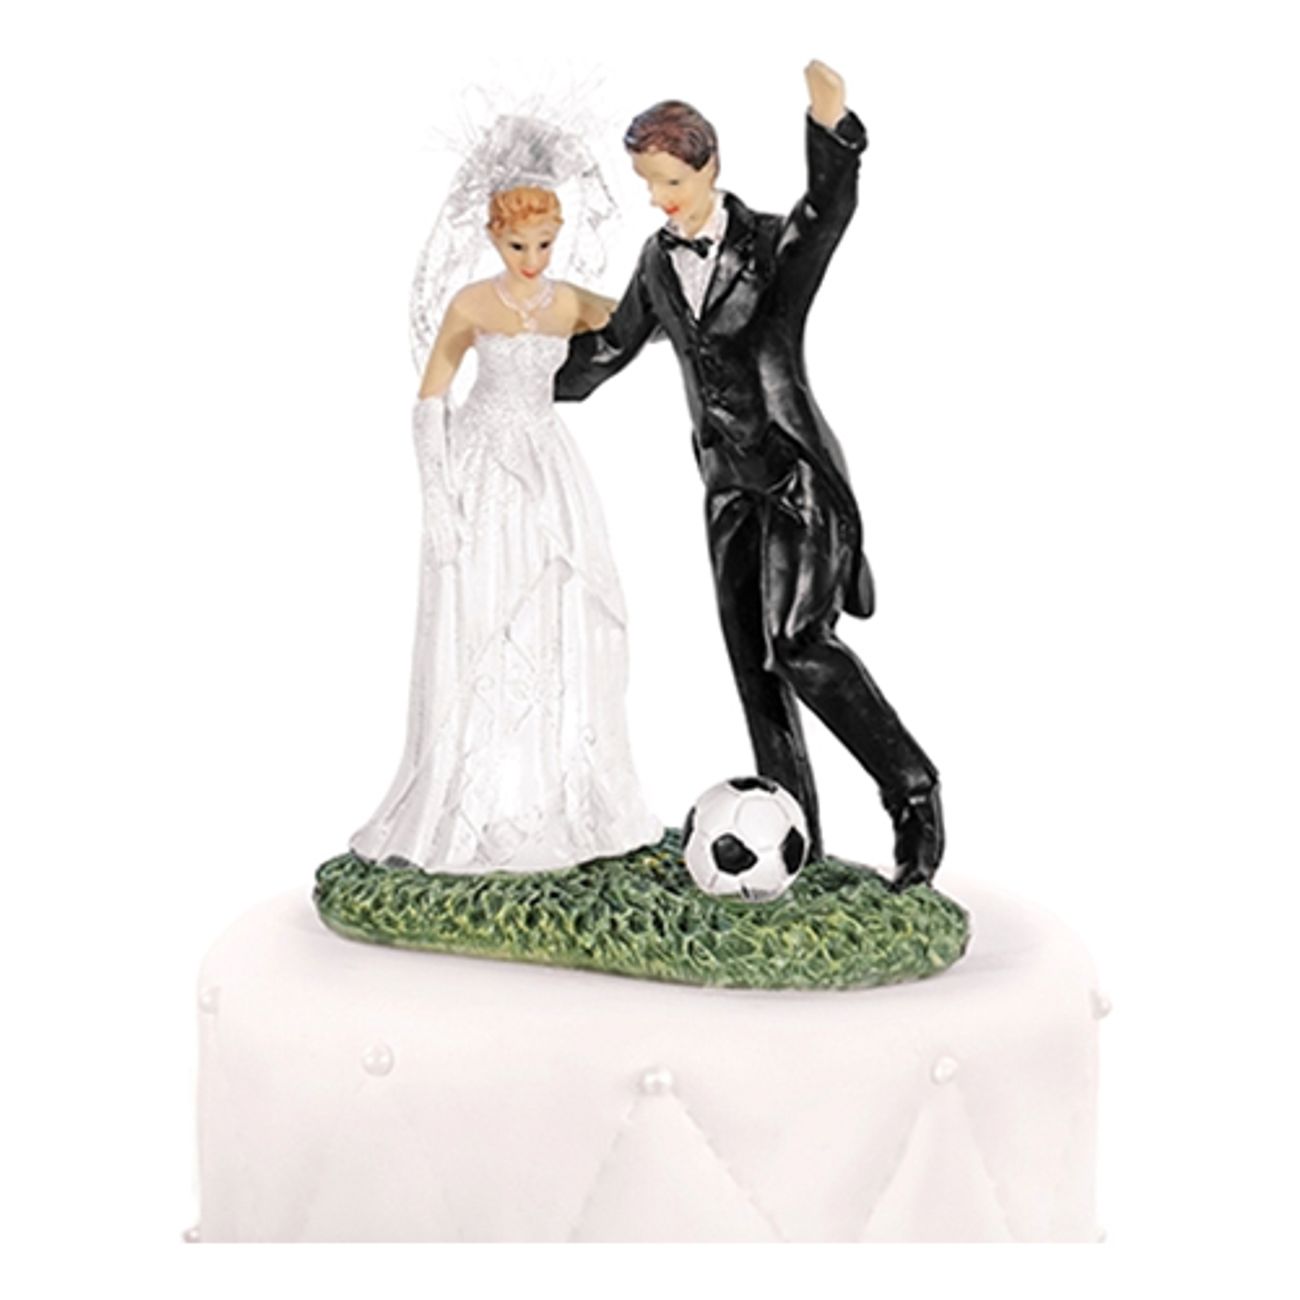 brollopsfigur-nygifta-med-fotboll-1